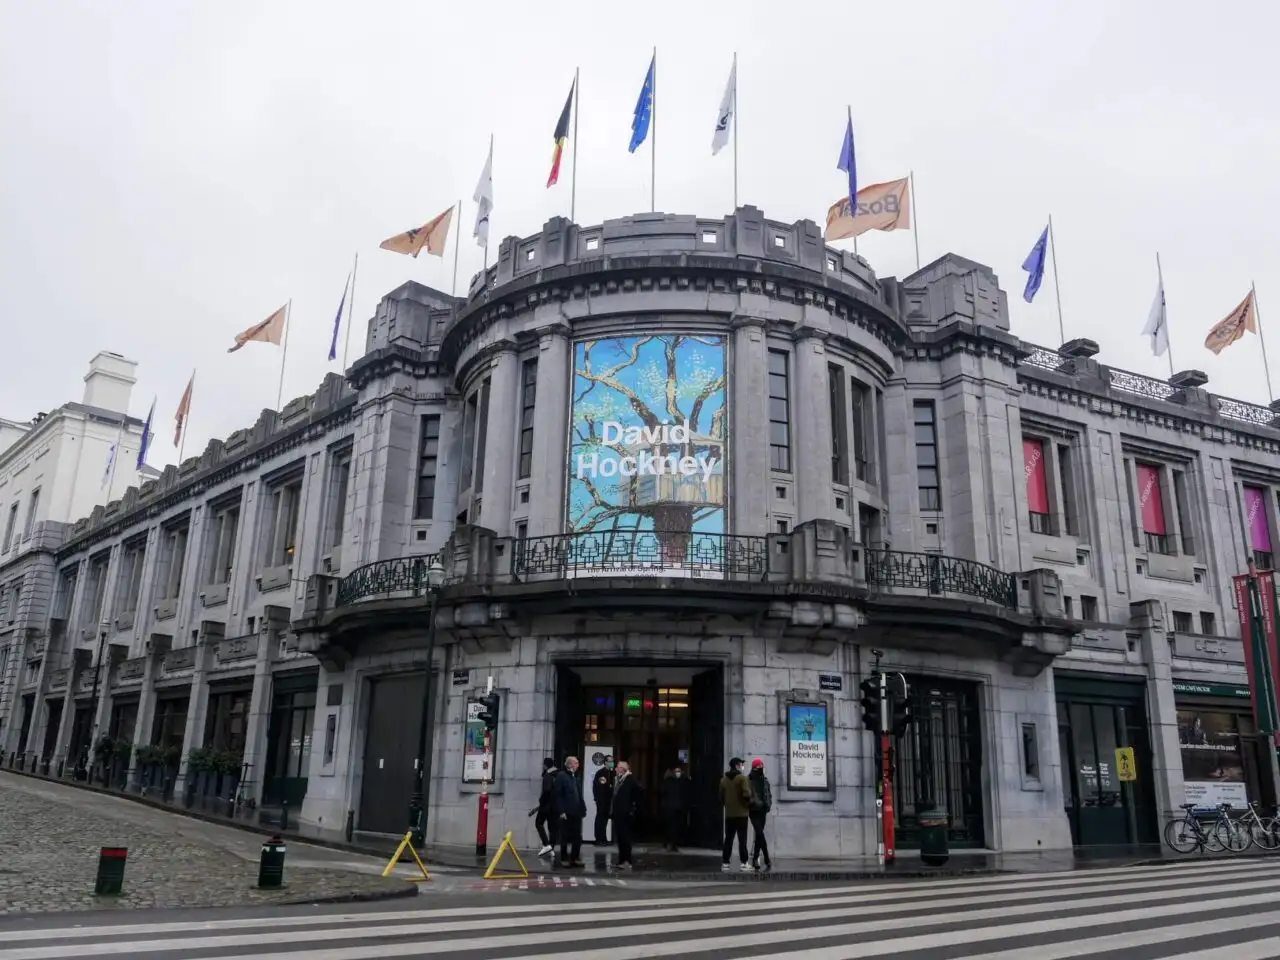 Hockney expo at Bozar museum in Brussels